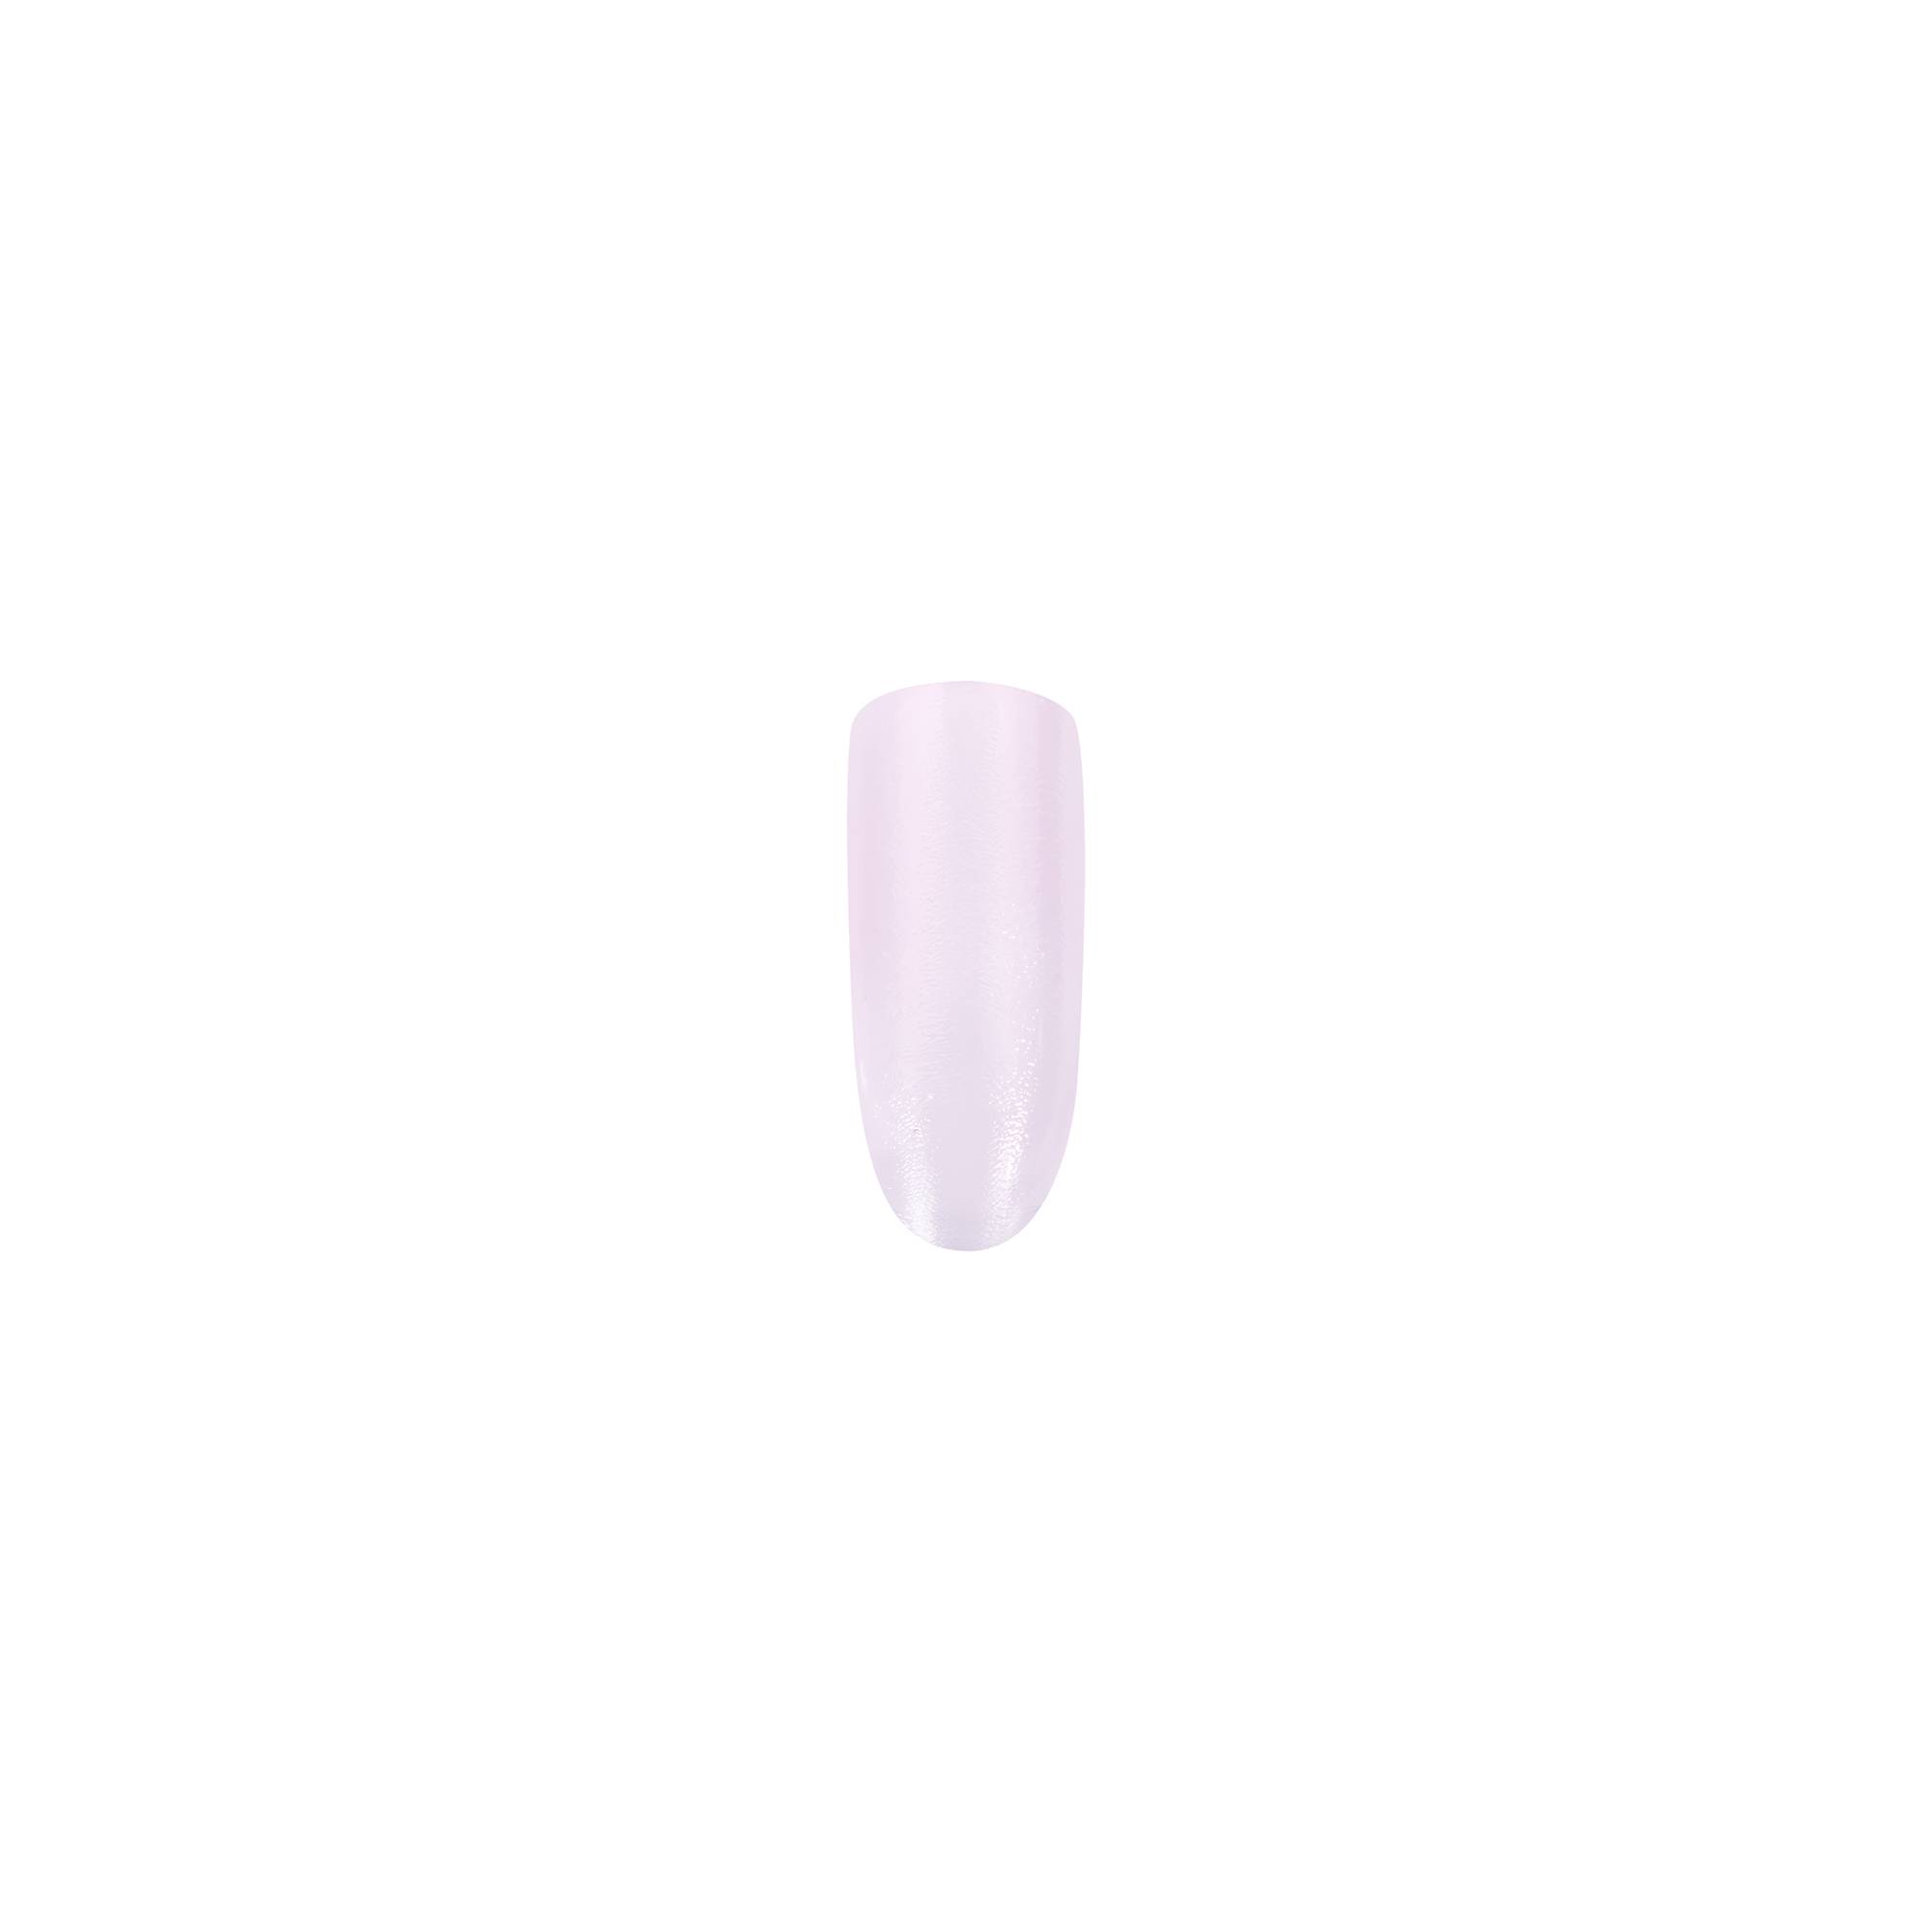 Durcisseur cure express - Milky pink de la marque Peggy Sage Contenance 11ml - 2